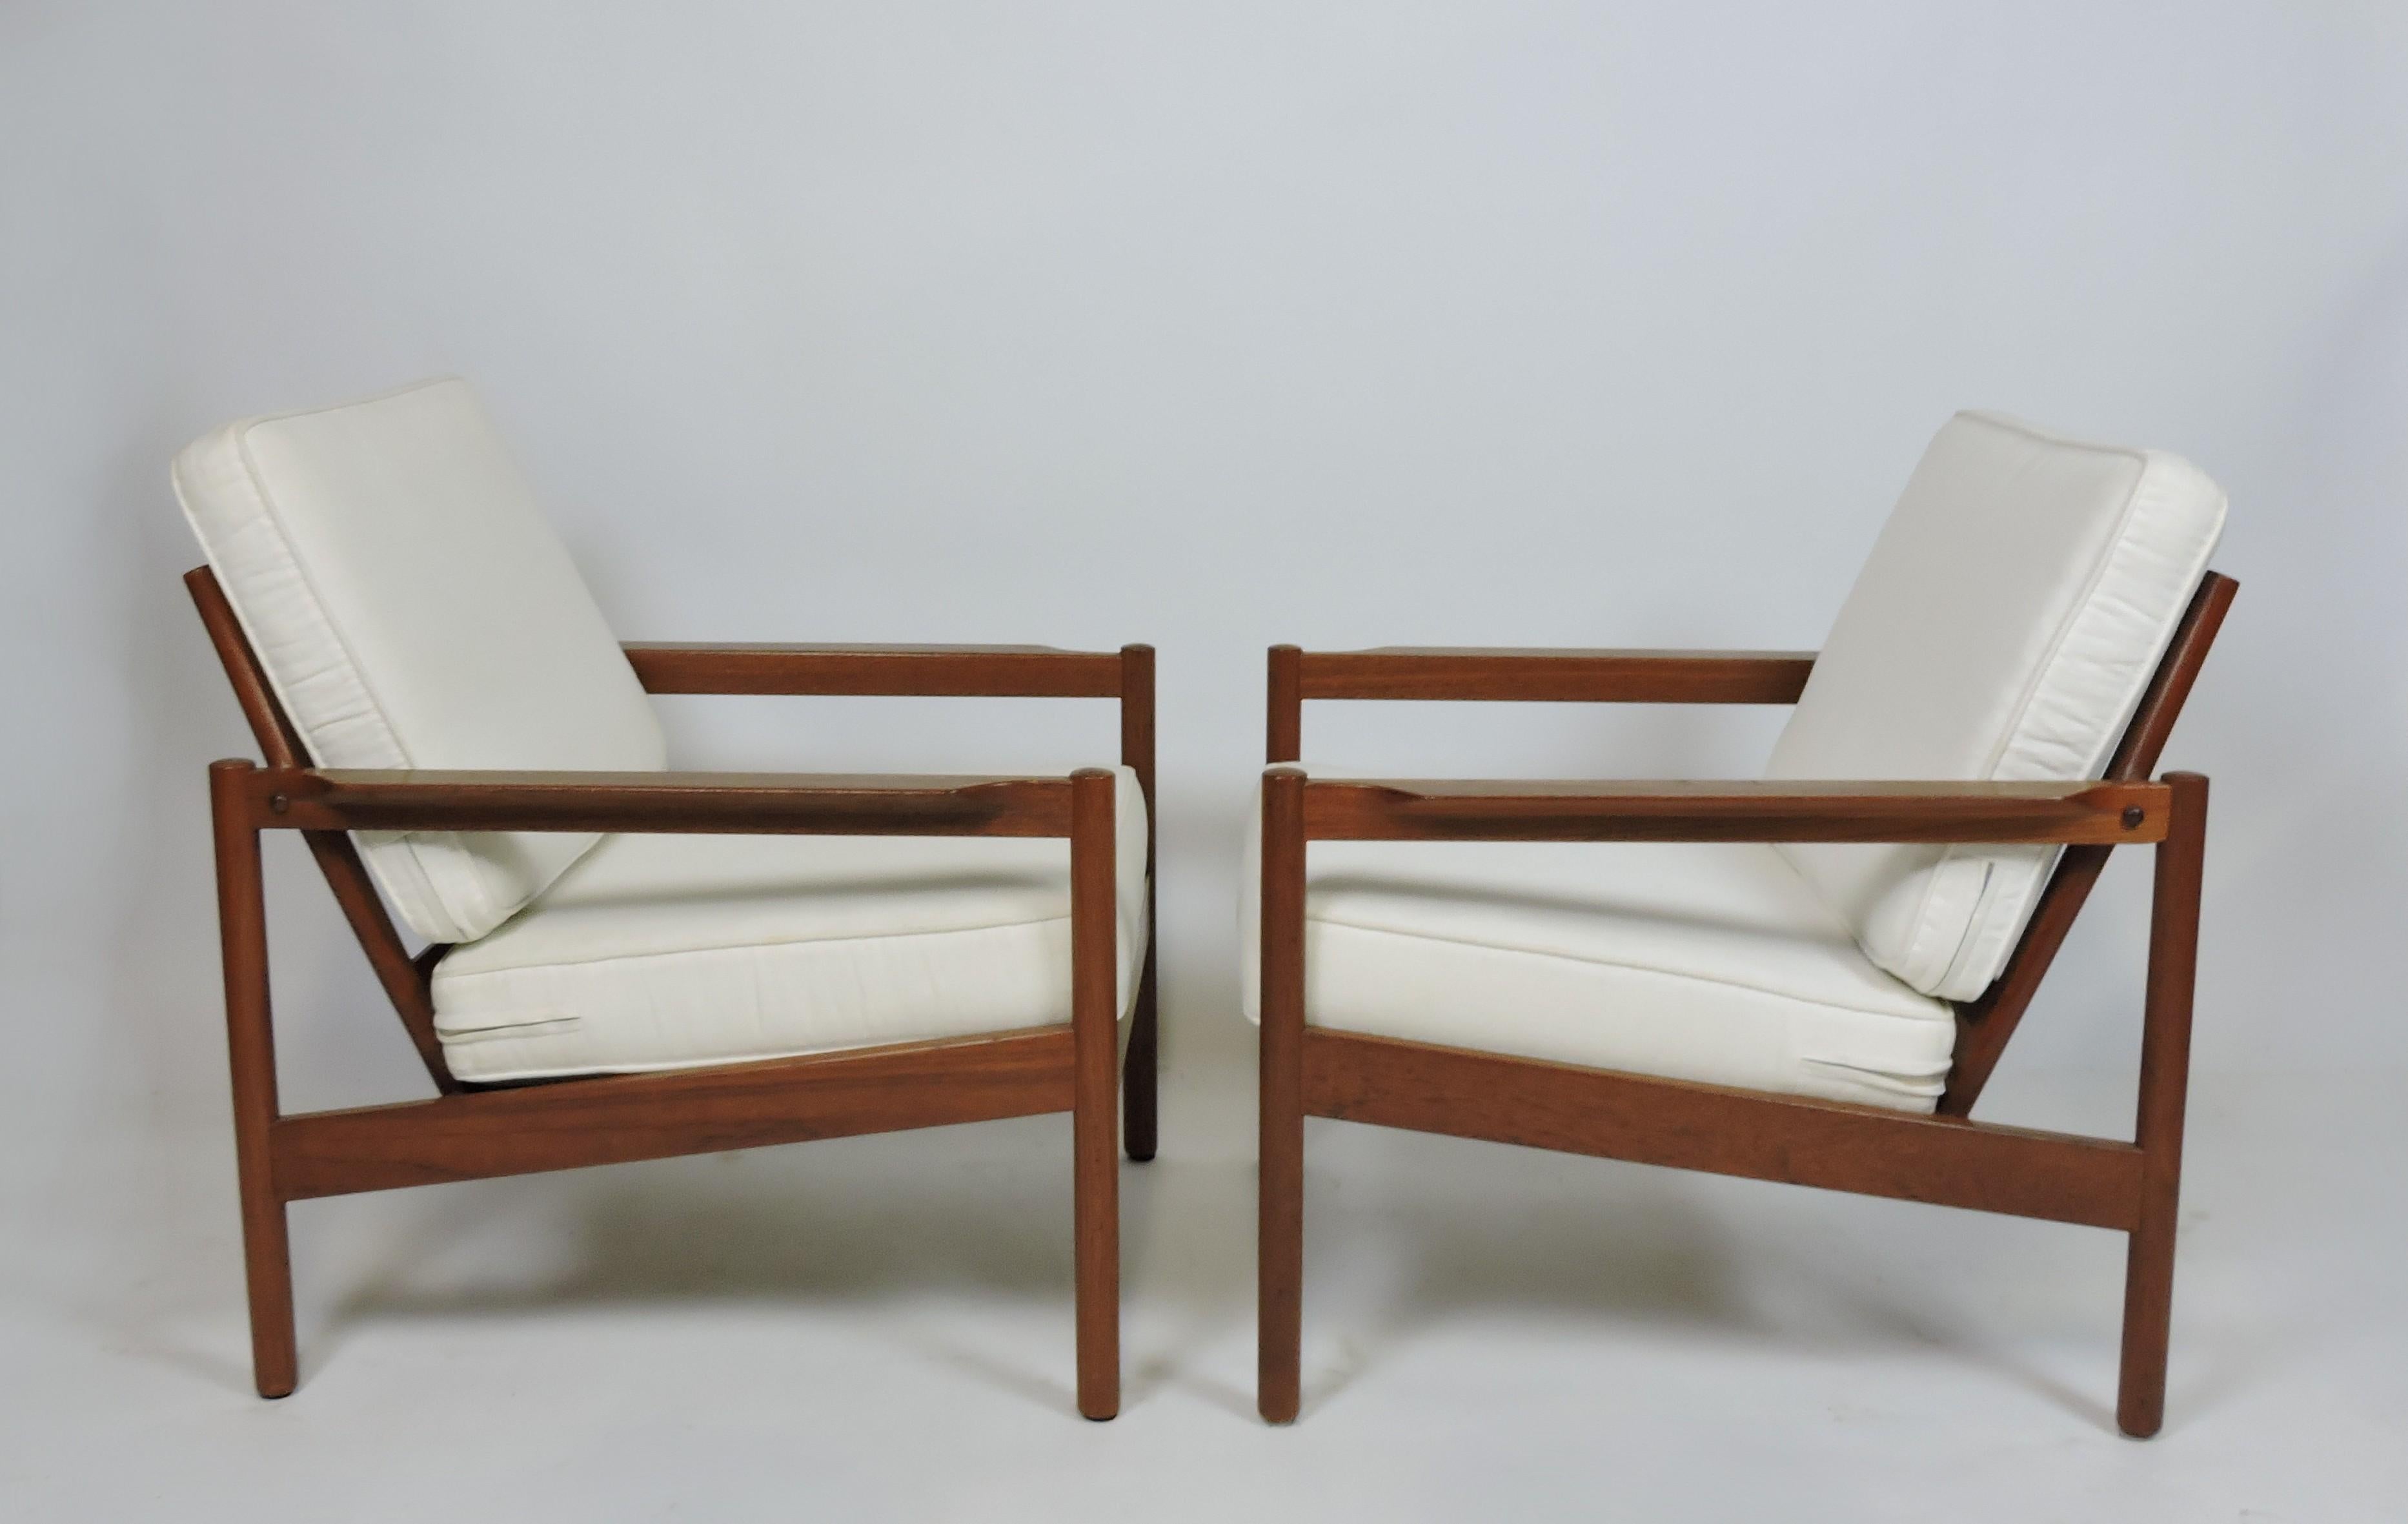 Belle paire de chaises longues à accoudoirs ouverts, modèle KK161, conçue par Kai Kristiansen et fabriquée au Danemark par Magnus Olesen, fabricant de meubles de haute qualité. Ces chaises très confortables sont fabriquées en teck massif avec deux